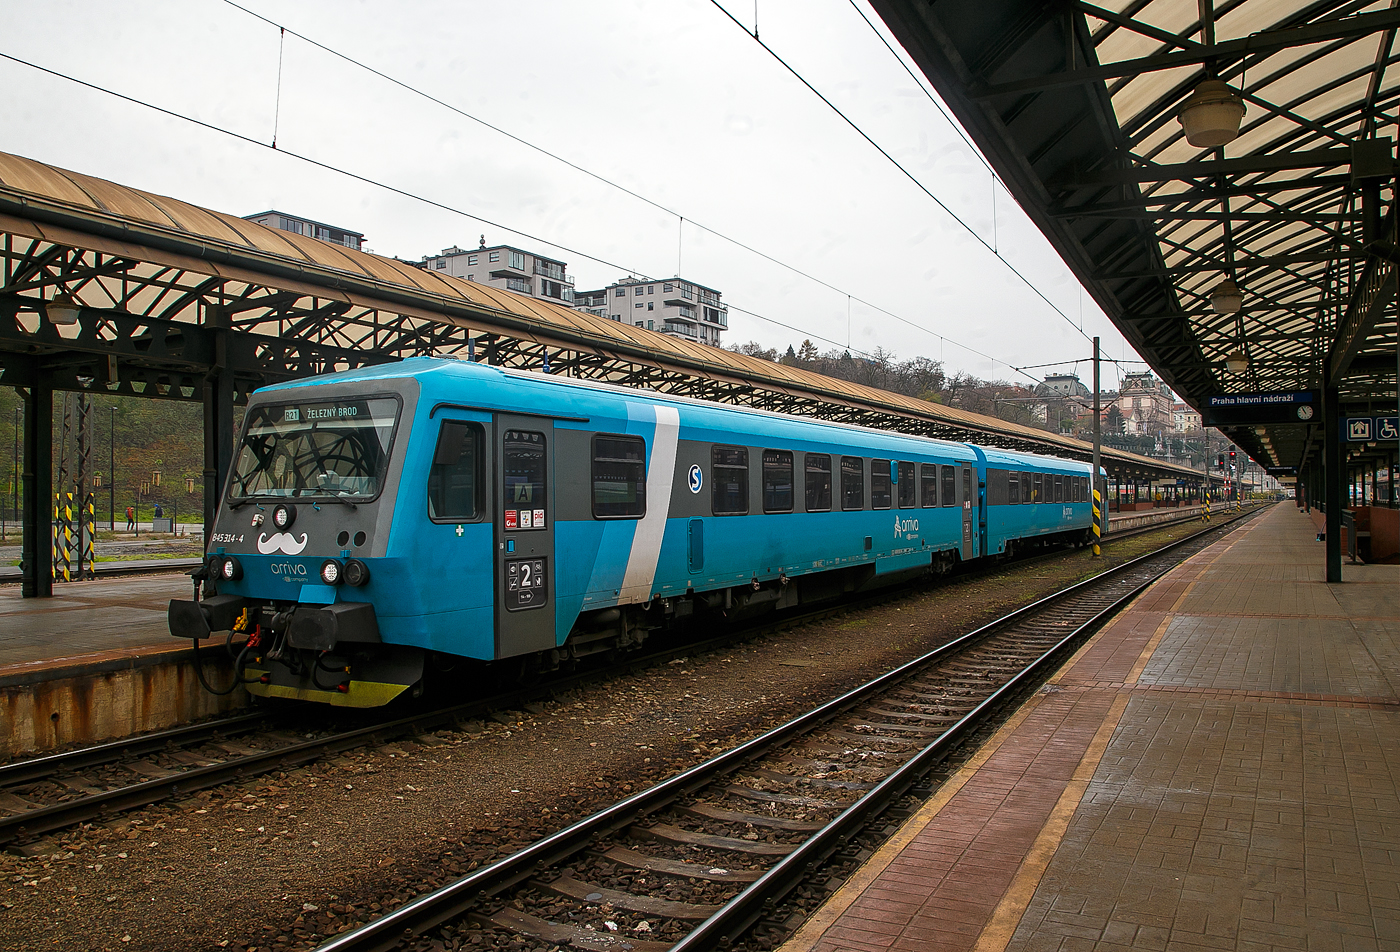 Der zweiteilige Dieseltriebzug 845 314-4 / 945 314-2 (95 54 5845 314-4 CZ-ARR / 95 54 5945 314-2 CZ-ARR) der ARRIVA vlaky s.r.o., Praha / Prag (eine Tochter der DB AG), ex DB 628 218-0 / DB 928 218-7, steht am 23.11.2022, als R21 nach Železný Brod, im Prager Hauptbahnhof (Praha hl.n.), zur Abfahrt bereit.

Der Dieseltriebzug wurde 1987 von der Düsseldorfer Waggonfabrik AG (DUEWAG) unter den Fabriknummern 88664 und 88665 gebaut und an die Deutsche Bundesbahn geliefert. Bis Februar 2019 war er, als 95 80 0628 218-9 D-DB / 95 80 0928 218-6 D-DB im Bestand der der DB Regio AG (RheinNeckar), dann wurde er an die tschechische DB-Tochter ARRIVA vlaky s.r.o. verkauft und durch Pars Nova a.s. (ab 2021 ŠKODA PARS a.s) modernisiert.

Seit 2012 wurden 43 Triebwagen an die tschechische DB-Tochter Arriva vlaky verkauft. Sie wurden in den Hausfarben Türkis (teilweise auch Hellgrün und Beige) lackiert und werden als Baureihe 845 / 945 geführt. Damit werden seit Dezember 2016 eigenwirtschaftlich Verkehre angeboten. Mit dem Gewinn von mehreren Ausschreibungen werden seit Dezember 2018 vermehrt Triebwagen erforderlich. Dafür werden weitere Triebwagen durch Pars Nova modernisiert. Sie erhalten neue Sitze, Steckdosen, eine behindertengerechte Toilette und WLAN. Neben den schon genannten Änderungen und einer zweiten Toilette hat er auch Displays an den Ausgängen zur Fahrgastinformation, und ein Abteil, von dem aus Getränke und Snacks verkauft werden. Diese Triebwagen werden als Baureihe 845.3 / 945.3 eingeordnet. 

Altere Modernisierungen der BR 845.1 und 845.2  haben noch keine behindertengerechte Toilette, welche aber bei den kommenden Renovierungen als zweite Toilette eingebaut werden soll.

TECHNISCHE DATEN:
Anzahl: 49 (21 davon als BR 845.3 / 945.3)
Hersteller: DUEWAG
Modernisierung durch Pars Nova a.s. (ab 2021 ŠKODA PARS a.s)
Spurweite: 1.435 mm (Normalspur)
Achsformel: 2’B’ + 2’2’
Länge über Kupplung:  45.400 mm (2× 22.700 mm)
Dienstgewicht: 68 t (40 t und 28 t)
Höchstgeschwindigkeit: 120 km/h
Dieselmotor: V-12 Zylinder Daimler-Benz OM 444A
Installierte Leistung: 410 kW
Leistungsübertragung: hydrodynamisch	
Kupplungstyp: Schaubkupplung
Sitzplätze: 134 (62 und 72)
